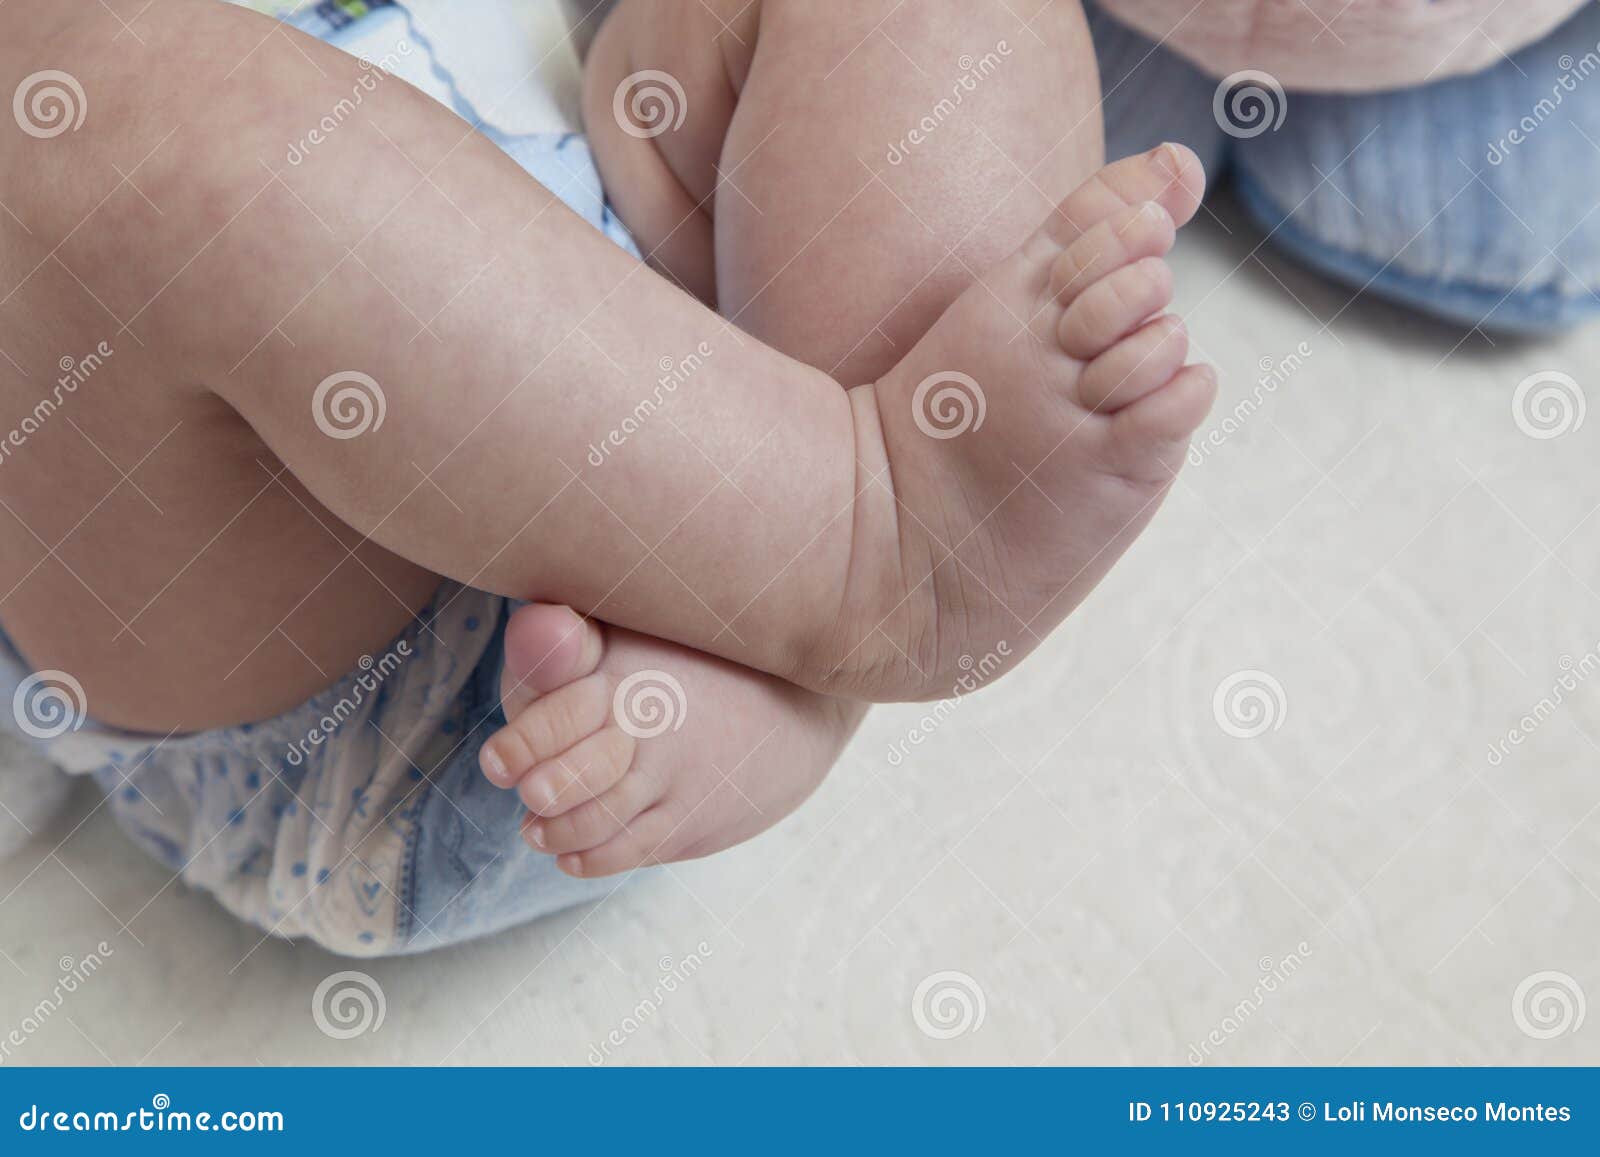 Ножки в 6 месяцев. Ребенок перекрещивает ноги. Грудничок скрещивает ноги. Грудничок перекрещивает ножки.